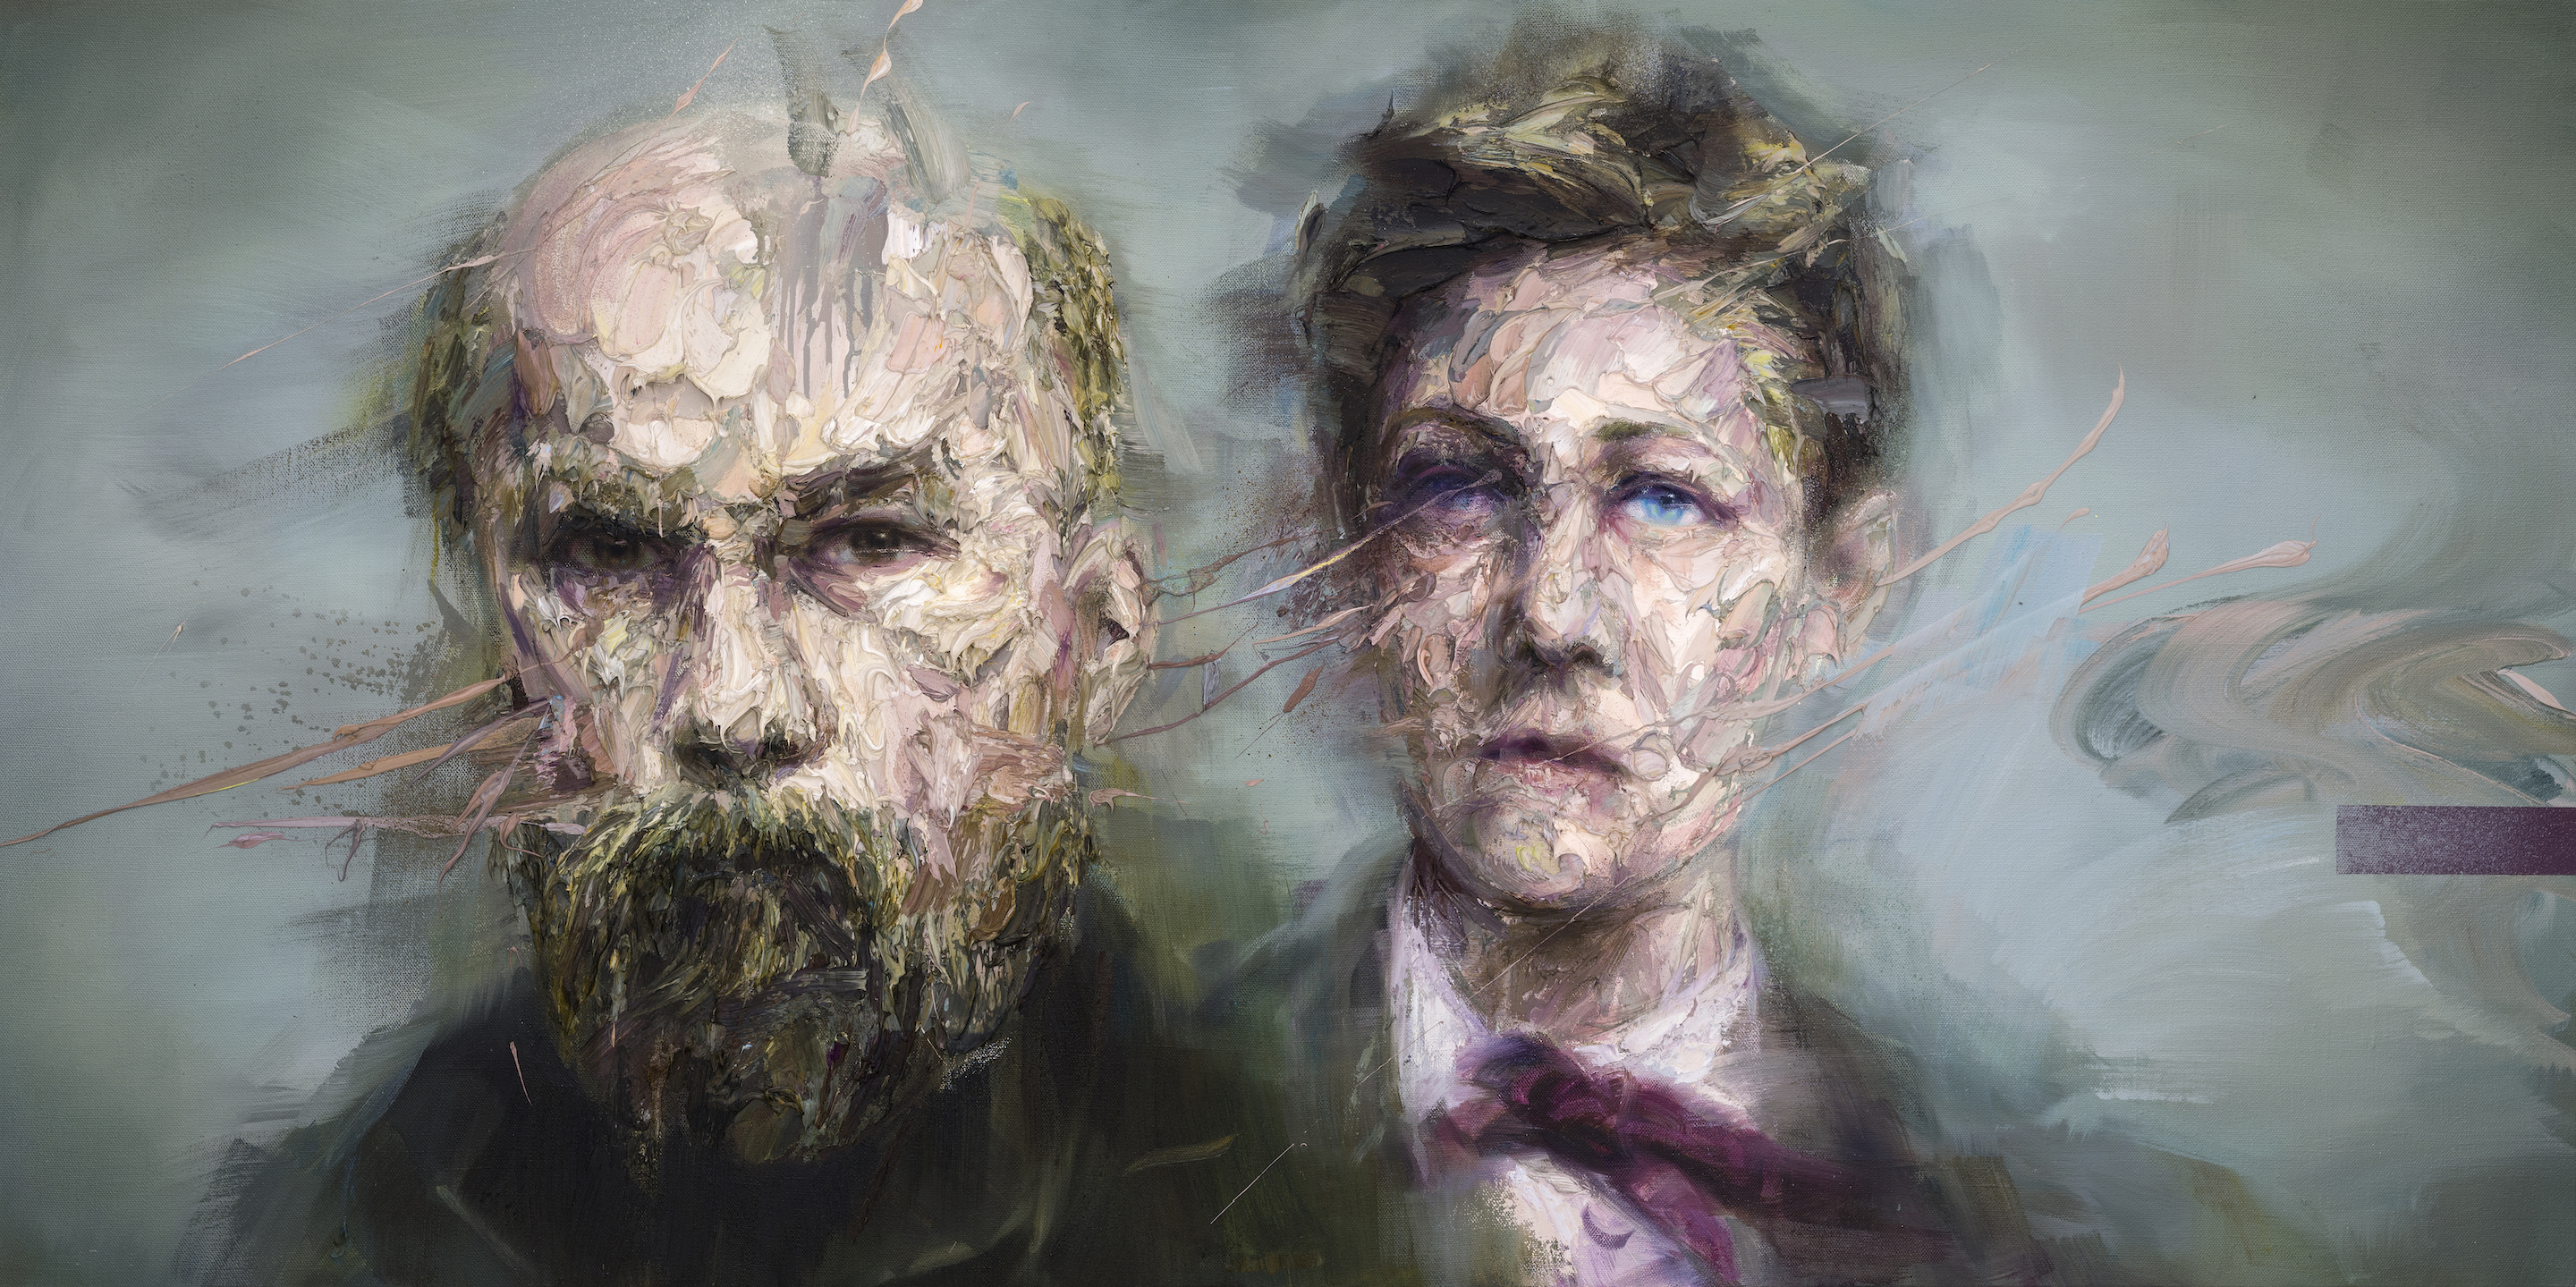 A portrait titled Paul Verlaine and Arthur Rimbaud by Artist Mathieu Laca